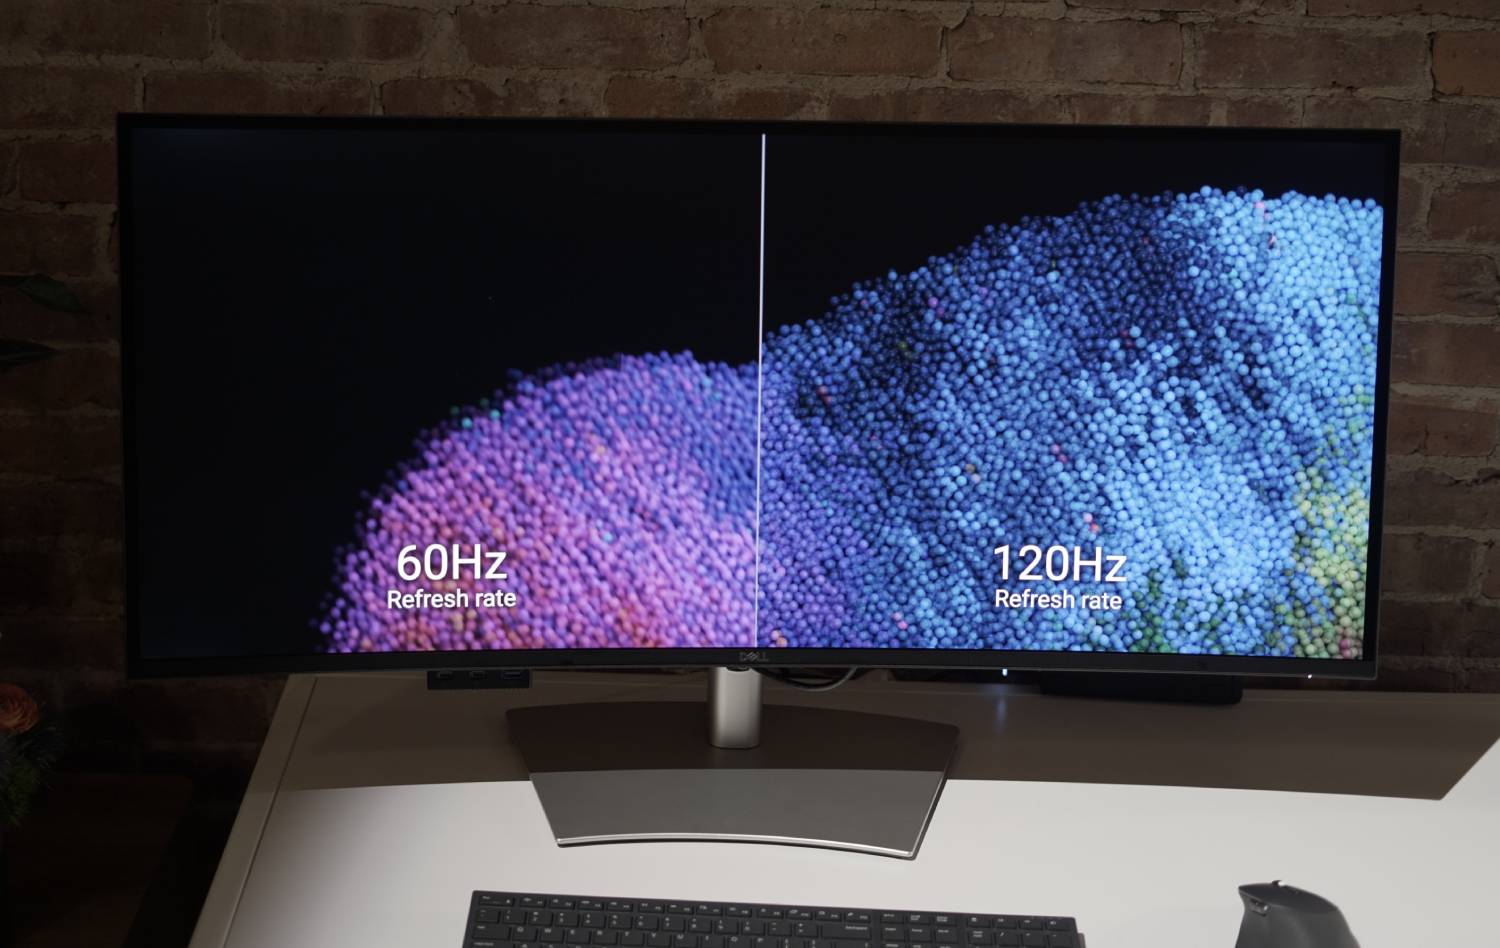 نمایشگر Dell UltraSharp که تفاوت بین 60 هرتز و 120 هرتز را نشان می دهد.